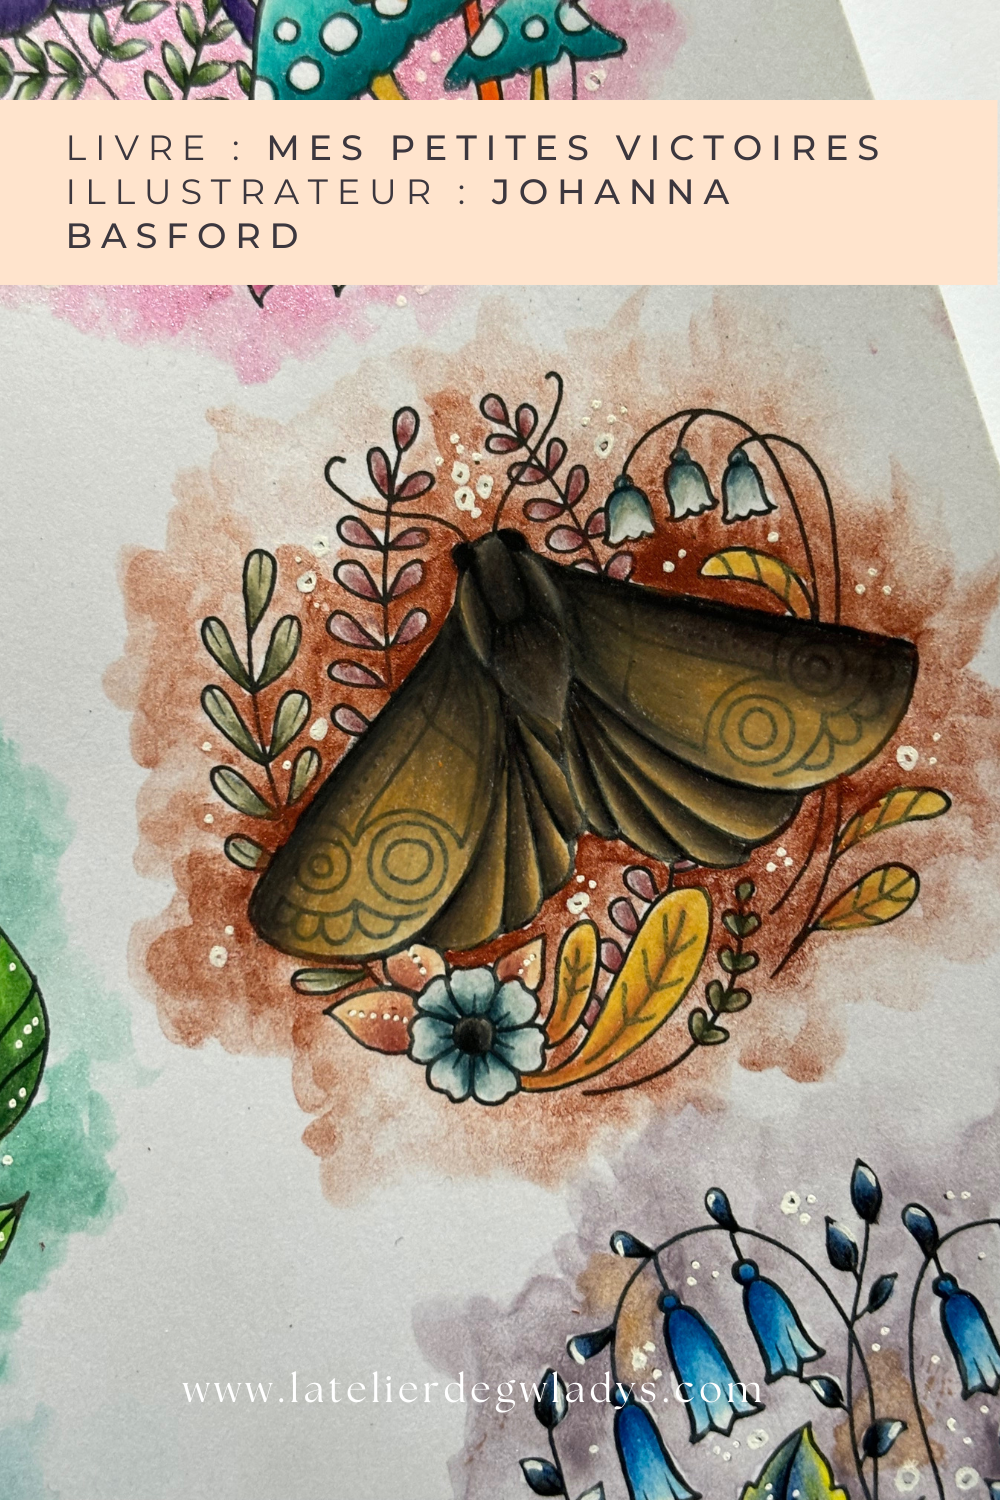 comment-colorier-la-nature-l-atelier-degwladys-papillon-denuit.png